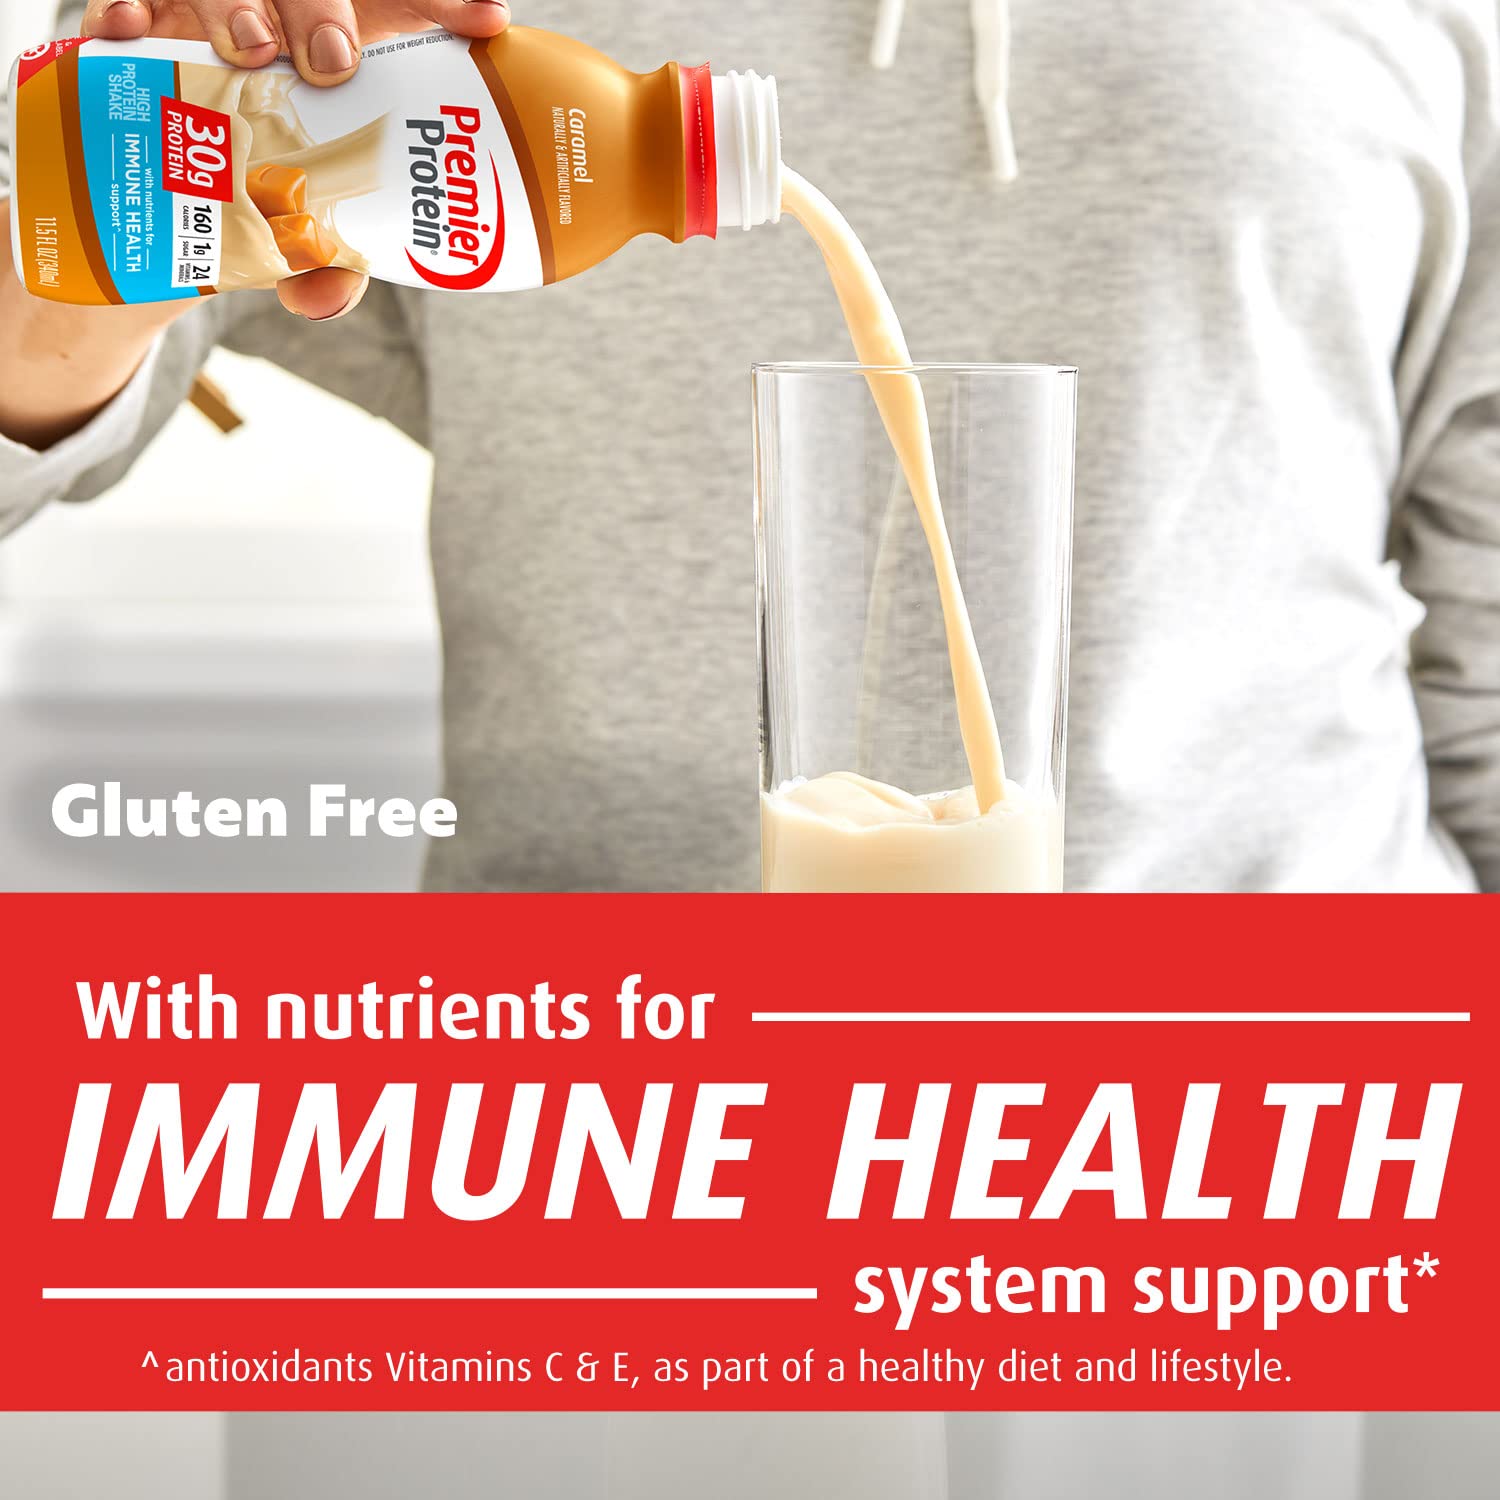 Premier Protein Shake, Caramel, 30g Protein, 1g Sugar, 24 Vitamins & Minerals, Nutrients to Support Immune Health 11.5 fl oz (12 Pack)